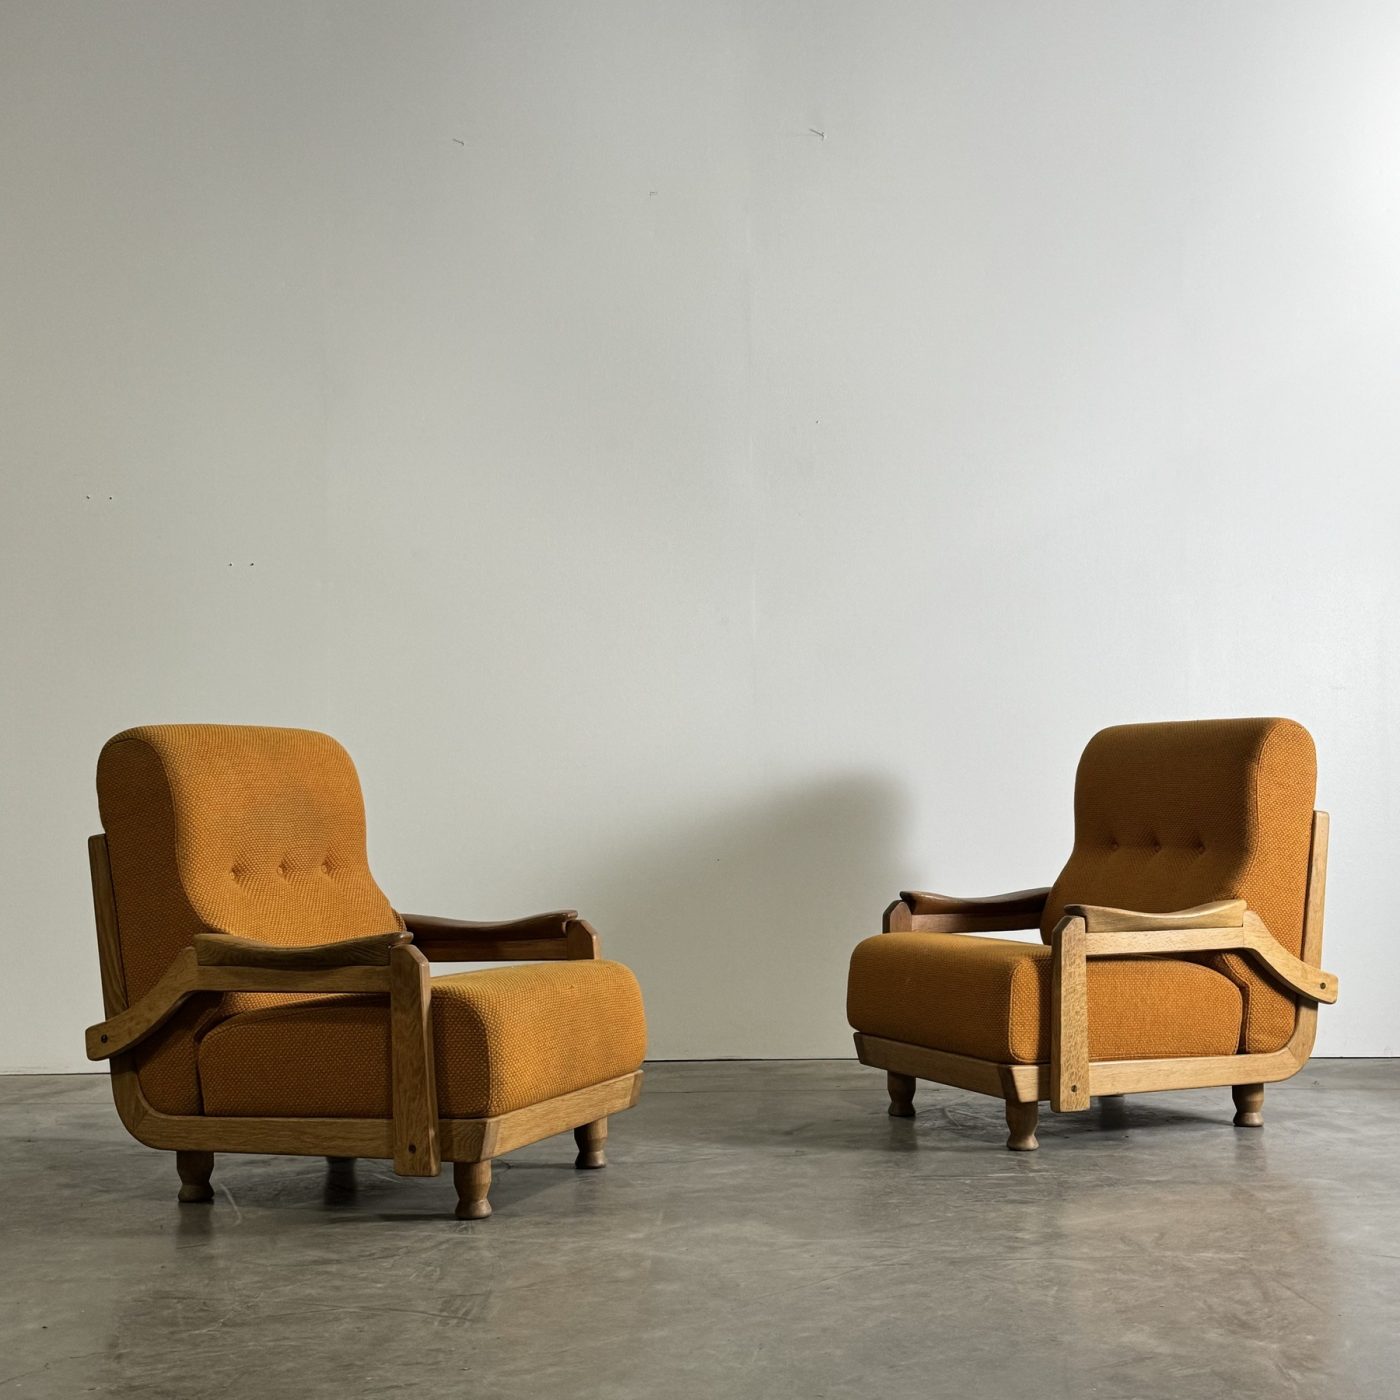 objet-vagabond-guillerme-armchairs0002